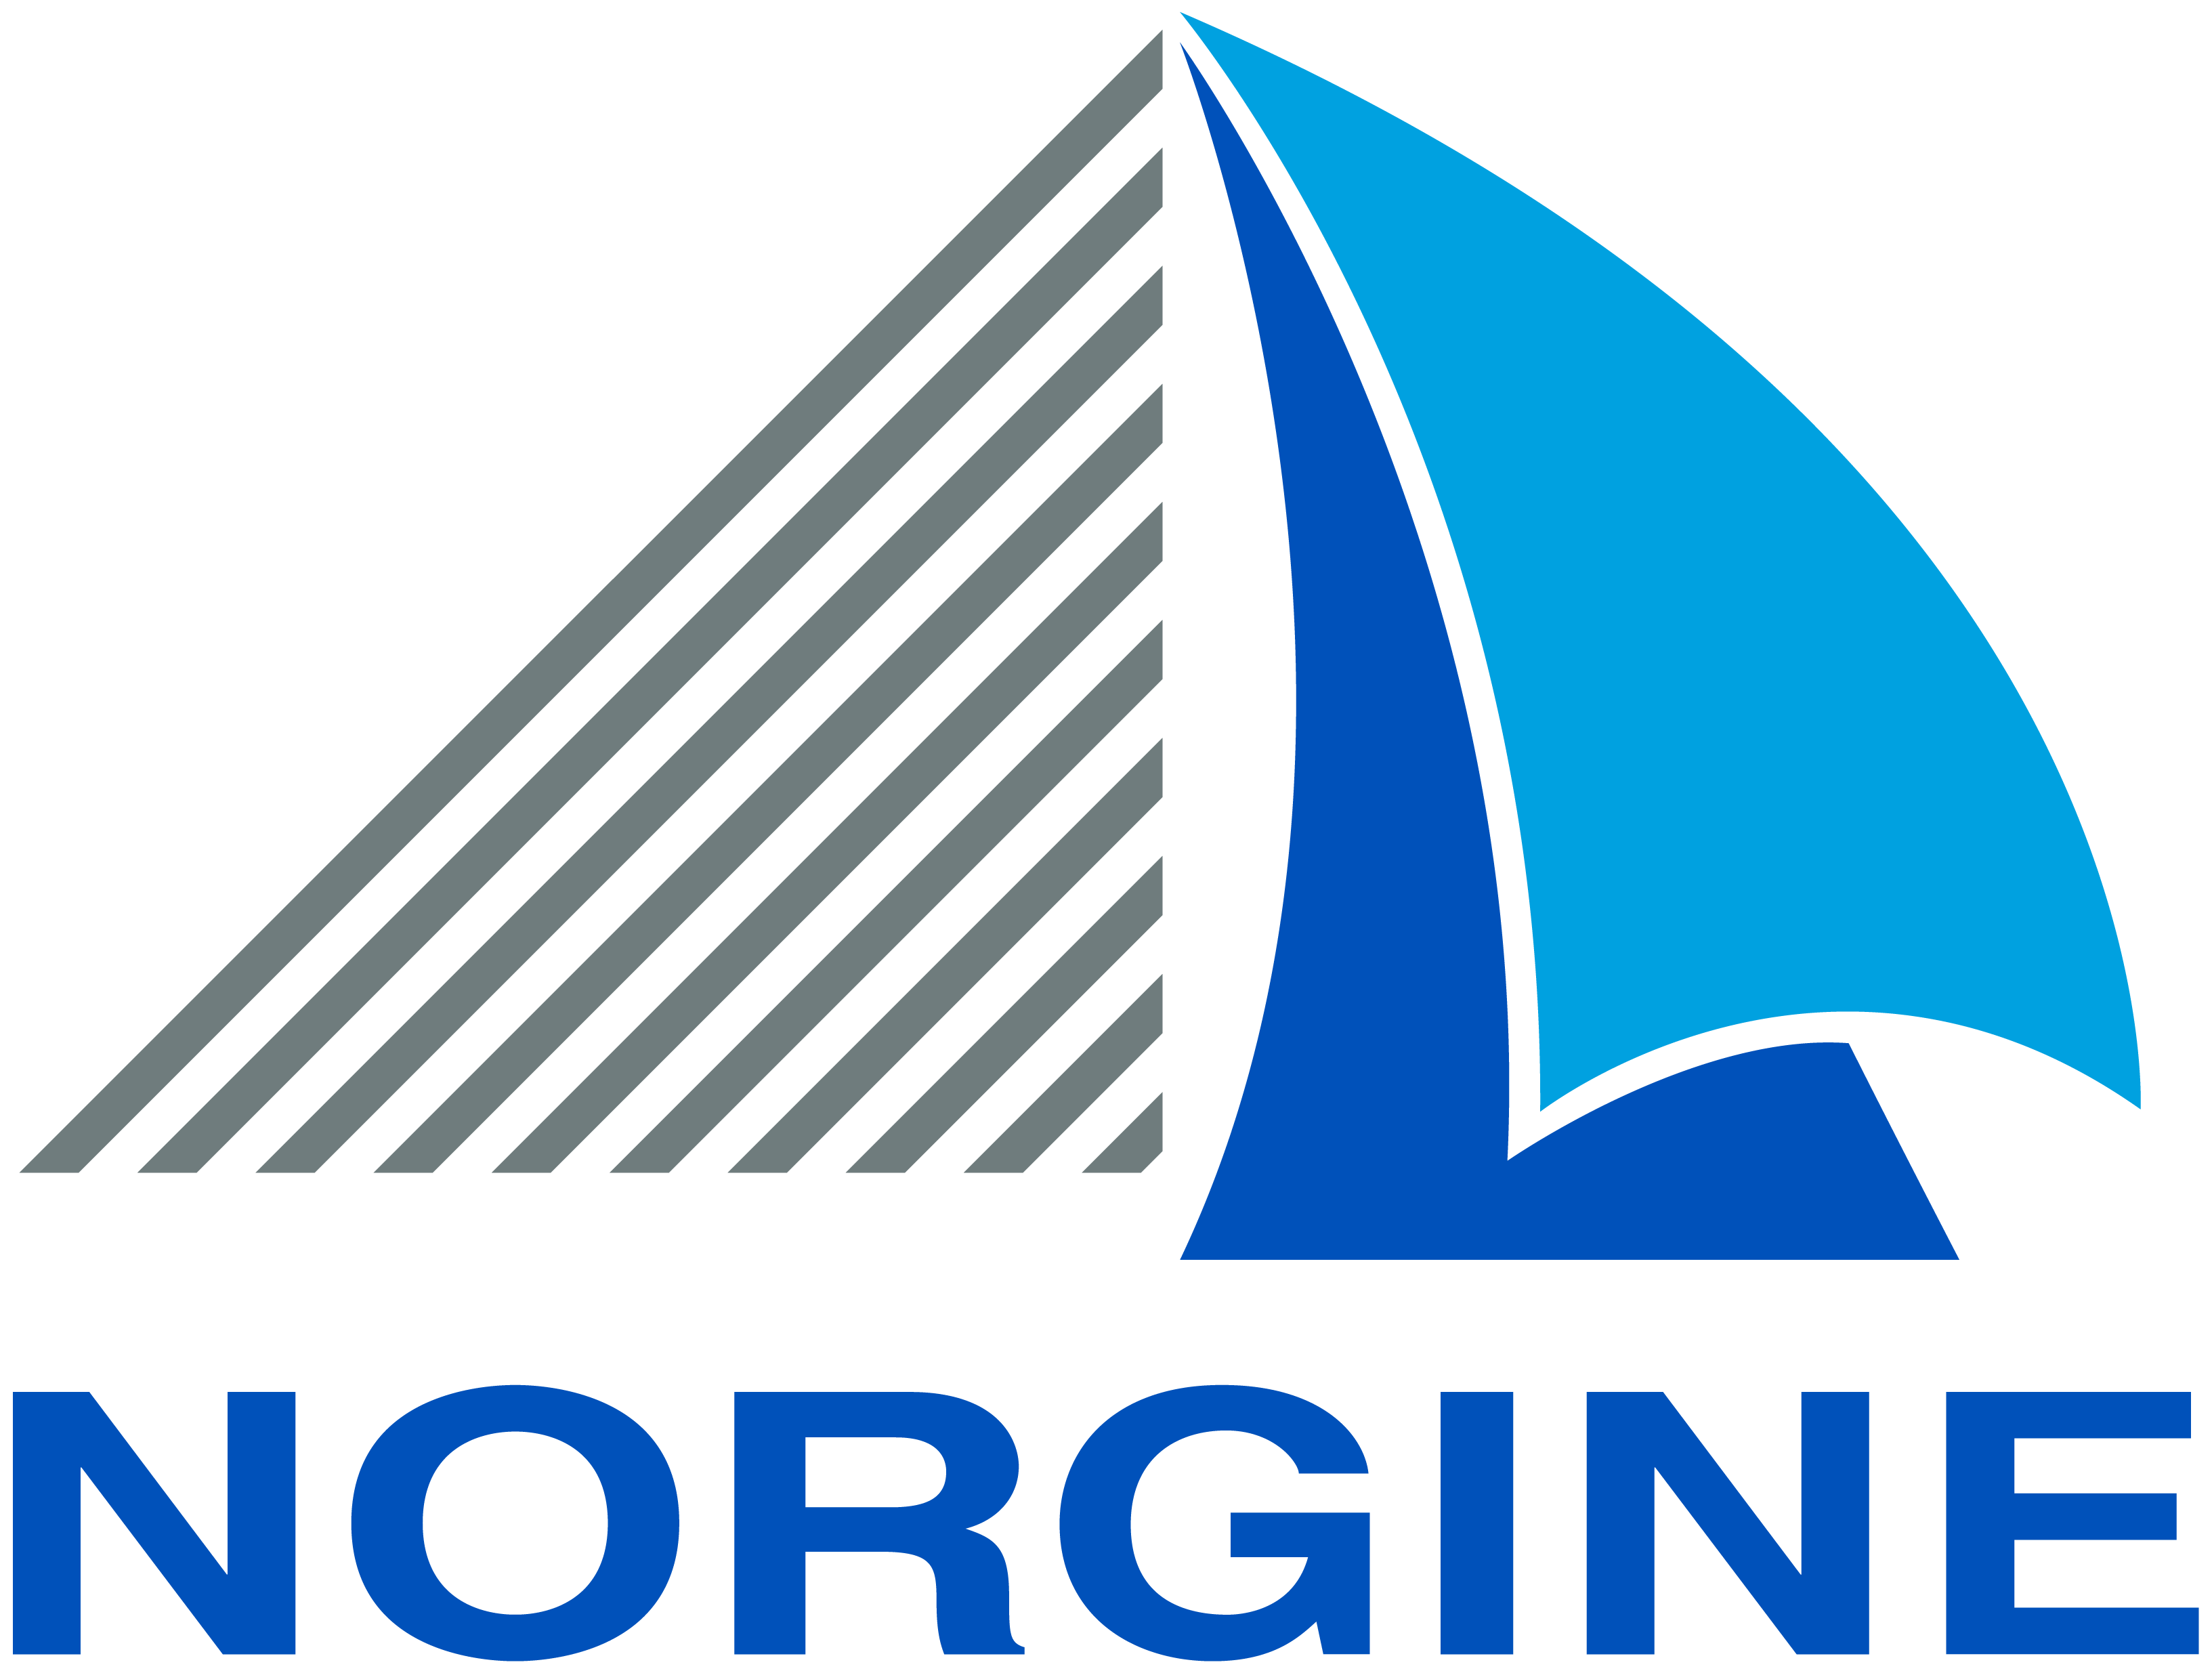 Norgine logo res 1000 1000